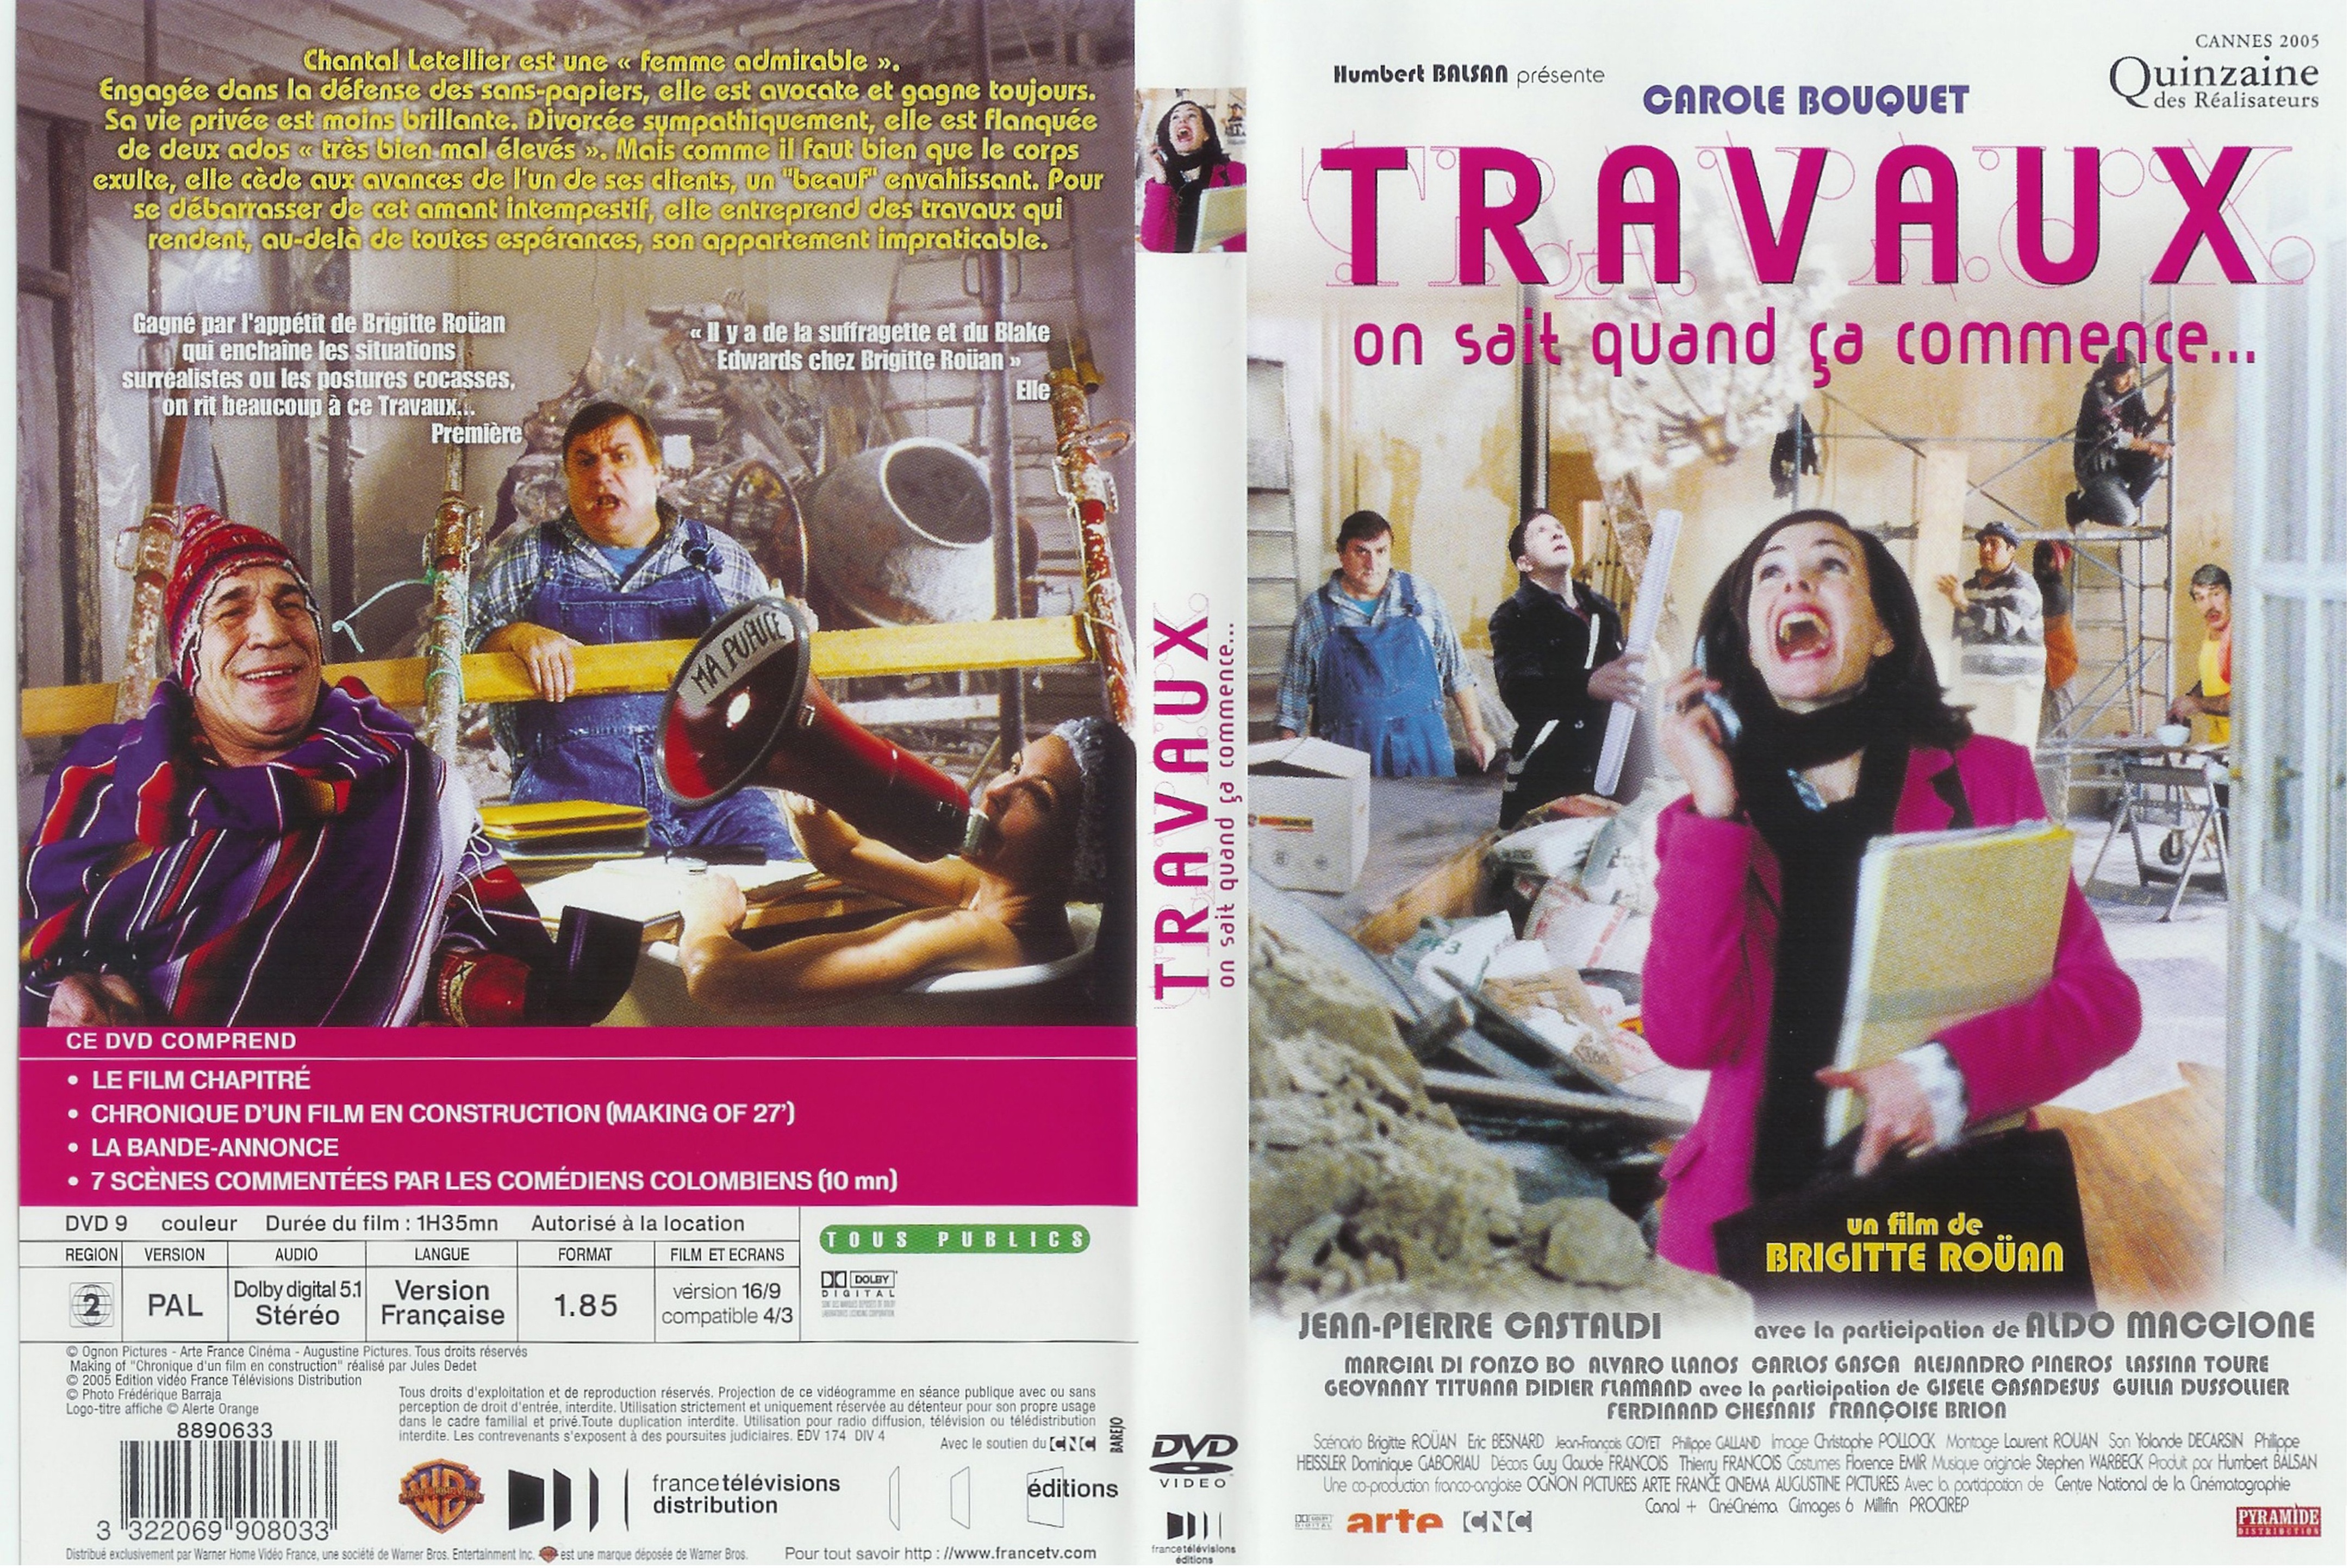 Jaquette DVD Travaux v2